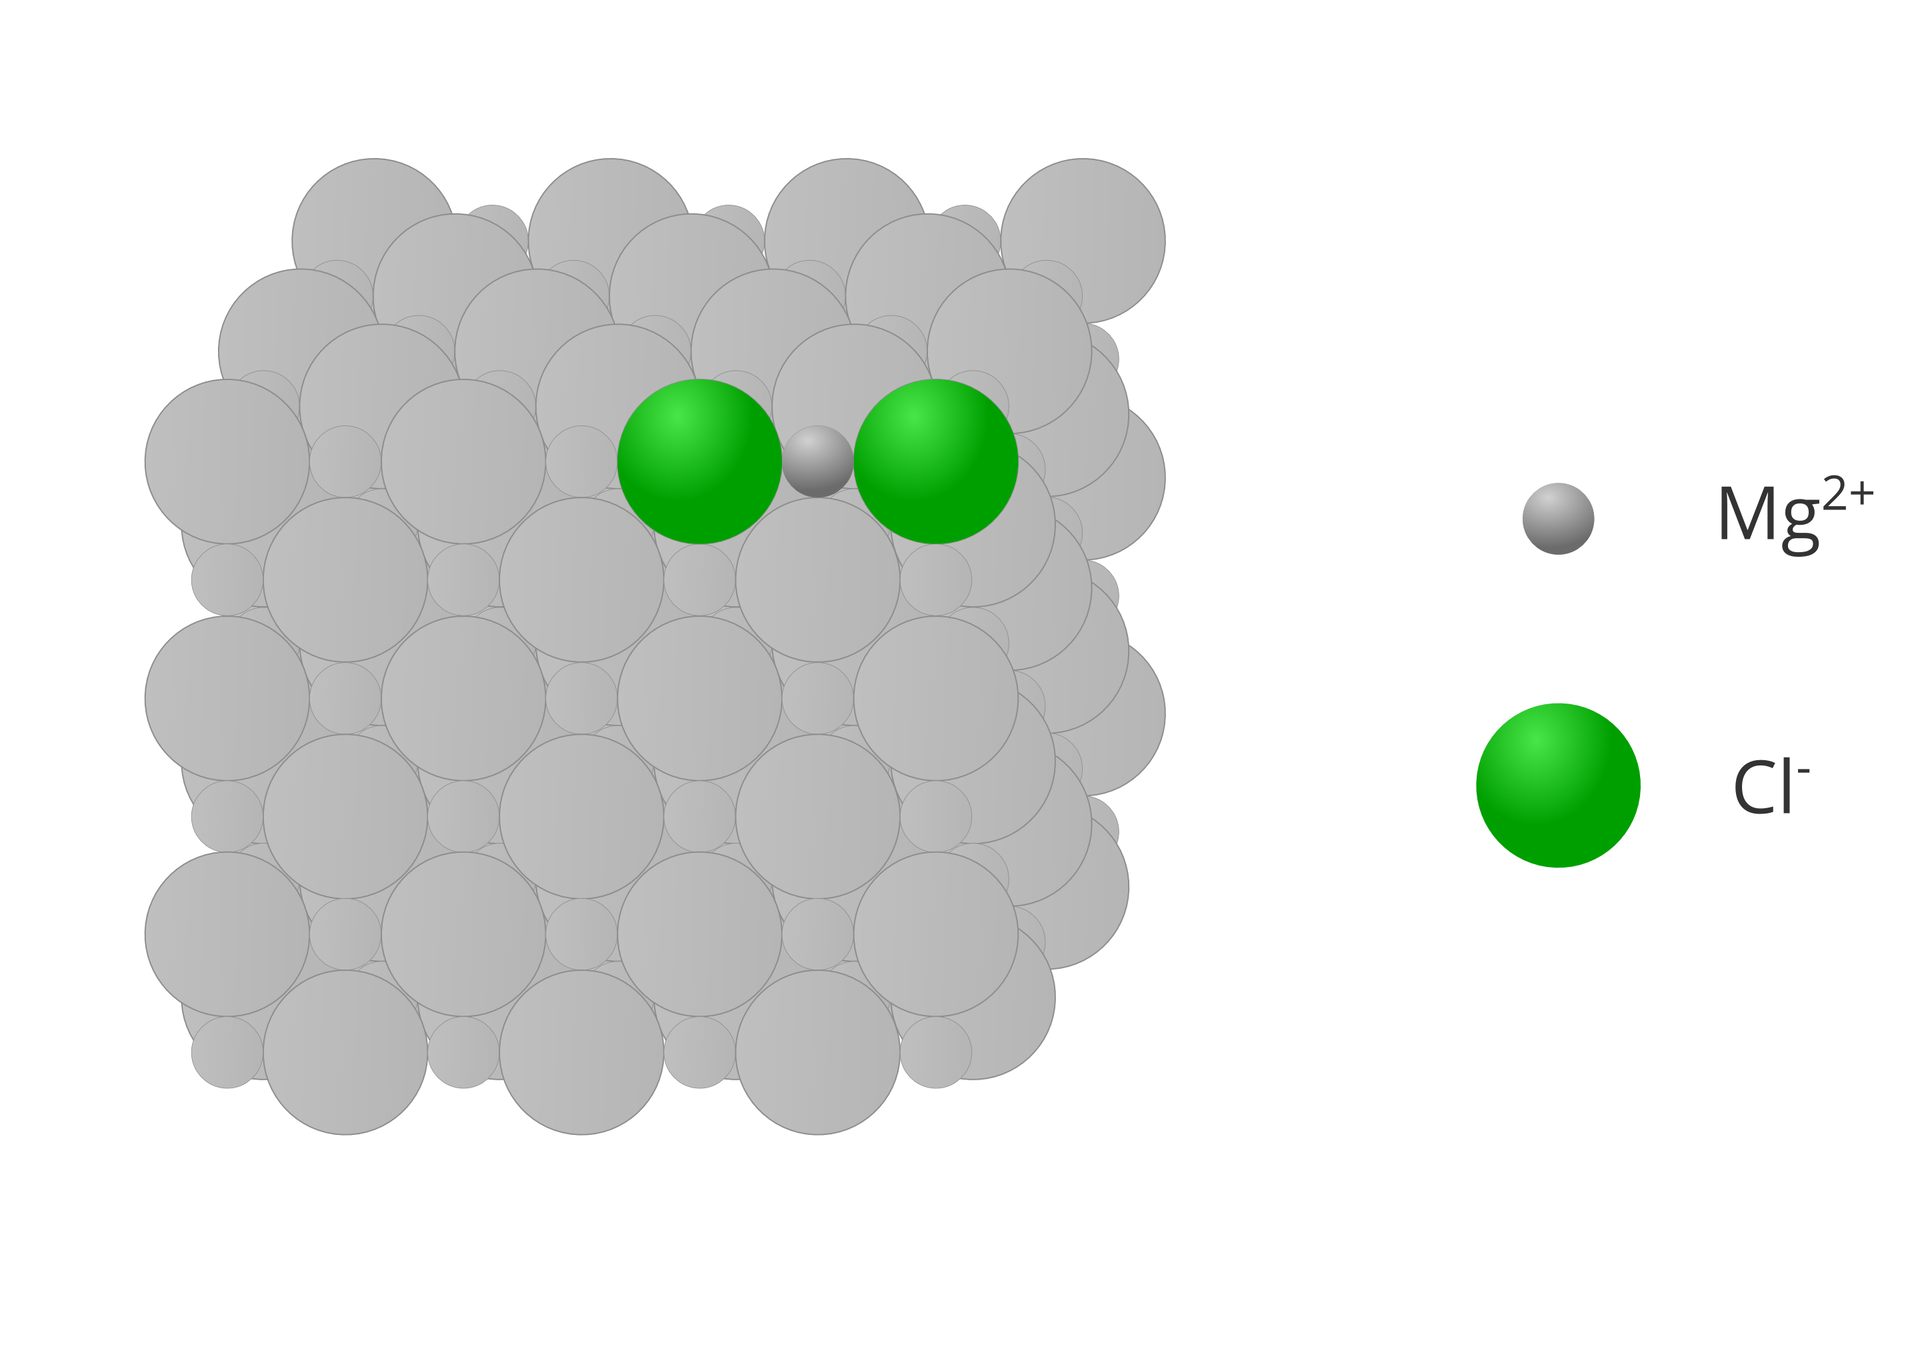 Ilustracja przedstawia wycinek atomowego modelu kryształku chlorku magnezu. Z lewej strony widoczny jest sześcian składający się z większych i mniejszych kół złożonych w regularny deseń, które dla większej czytelności obrazka zostały wyszarzone. Dwa aniony chlorkowe i jeden anion magnezowy tworzące cząsteczkę zostały wyróżnione kolorami, a po prawej stronie znajduje się ich opis z symbolami Mg2+ i Cl-.